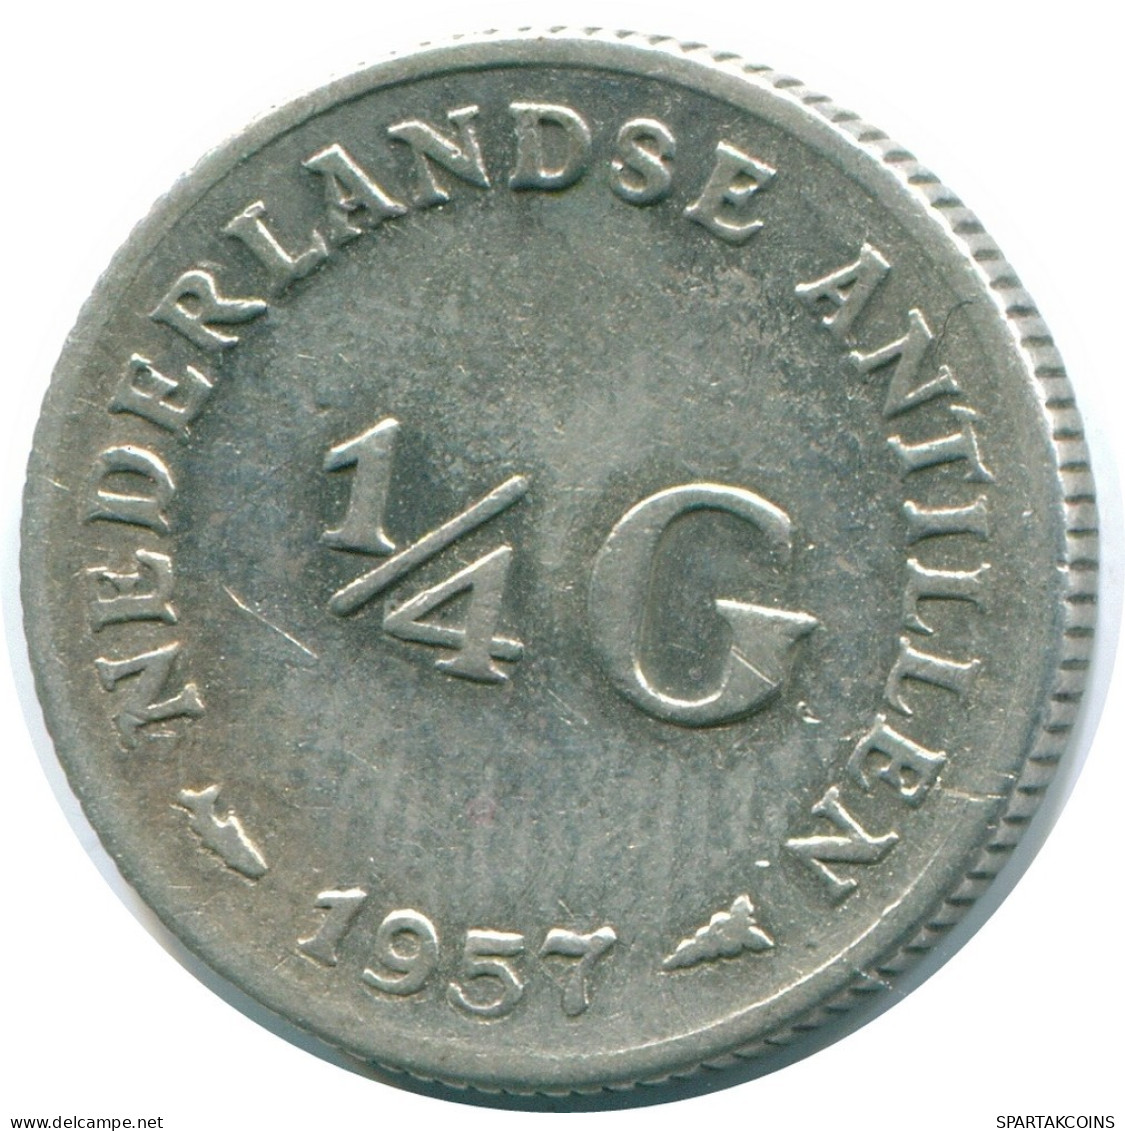 1/4 GULDEN 1957 NIEDERLÄNDISCHE ANTILLEN SILBER Koloniale Münze #NL10985.4.D.A - Niederländische Antillen